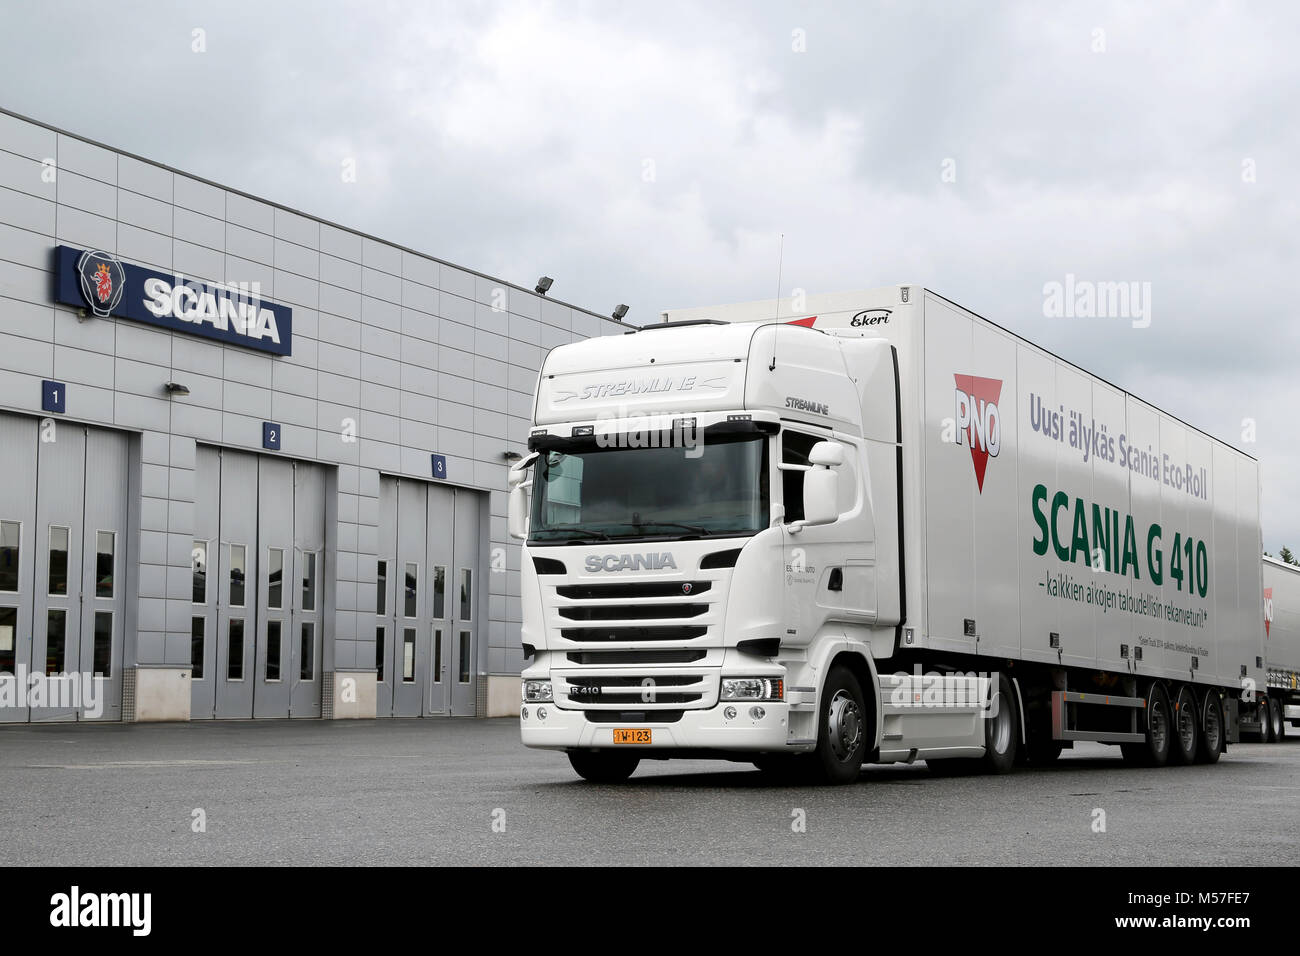 LIETO, FINLANDE - 30 MAI 2014 : Scania R410 camion semi présente dans le cadre de leur nouvelle gamme à Scania Euro 6 V8 Road Show. Banque D'Images